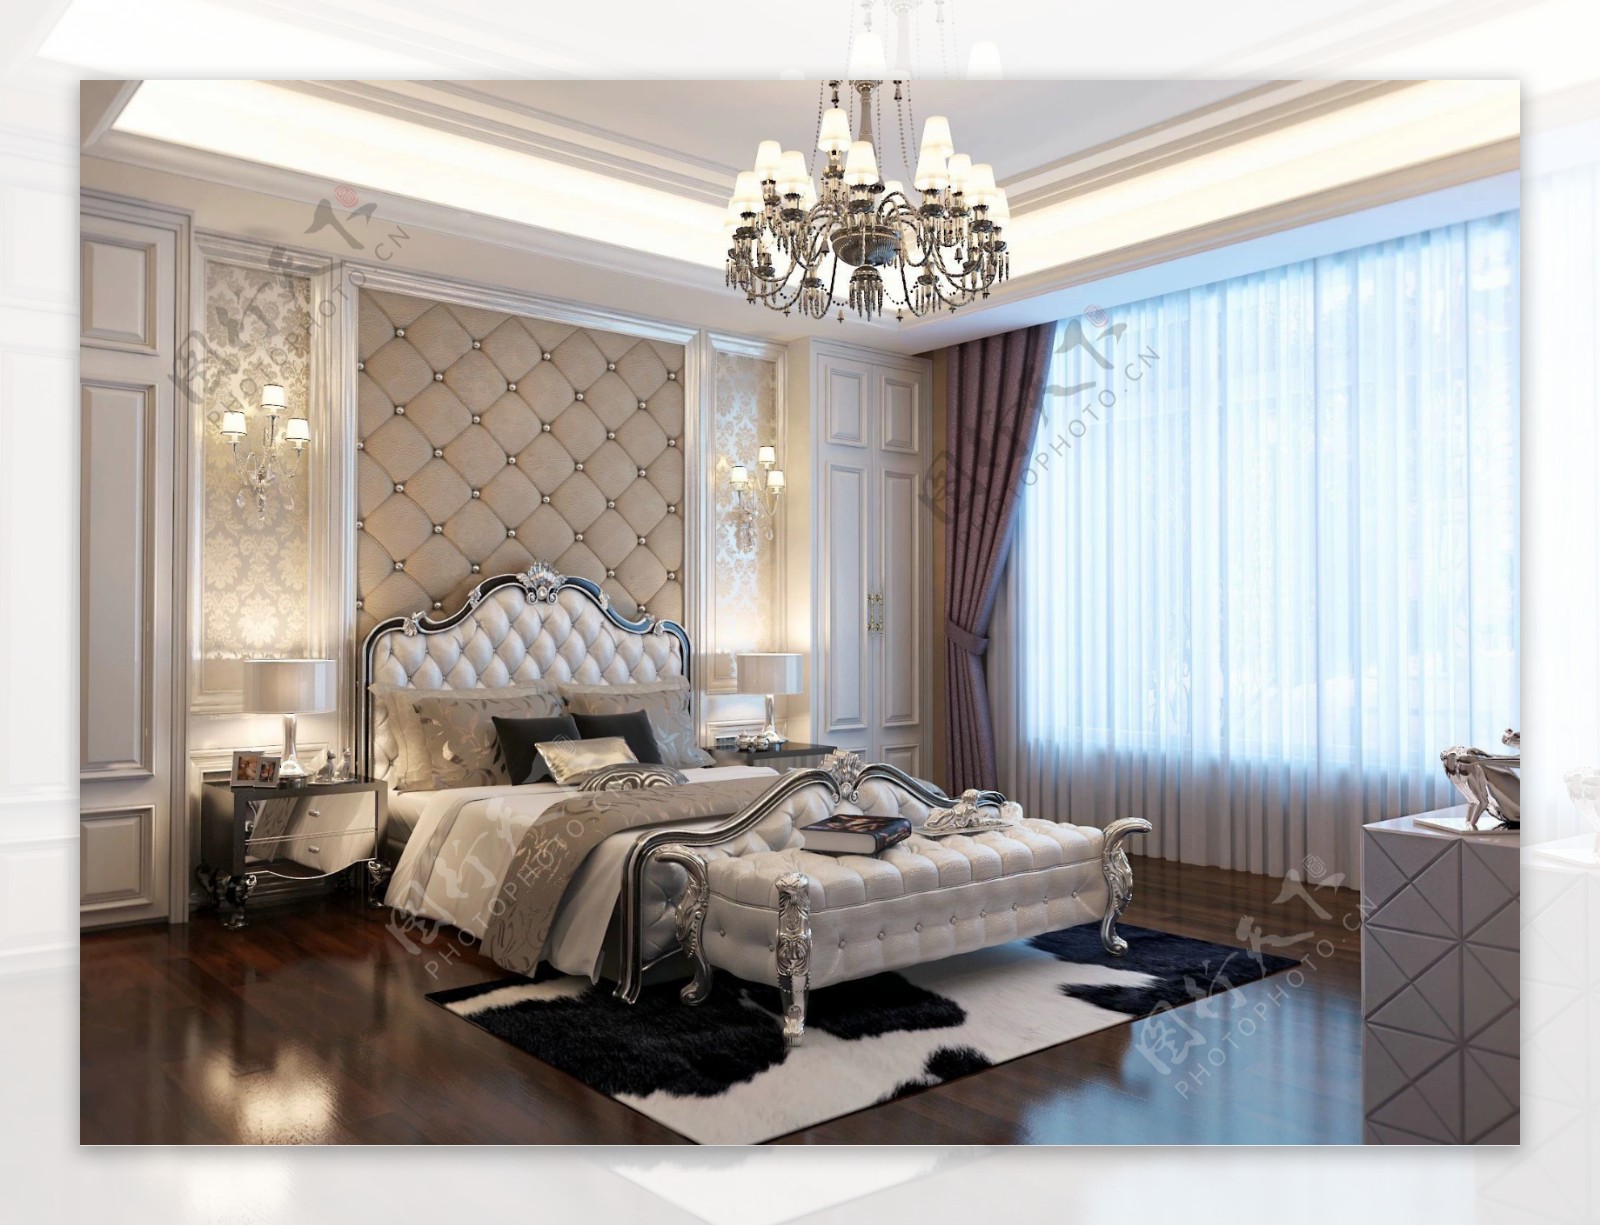 现代古典主义风格卧室图片